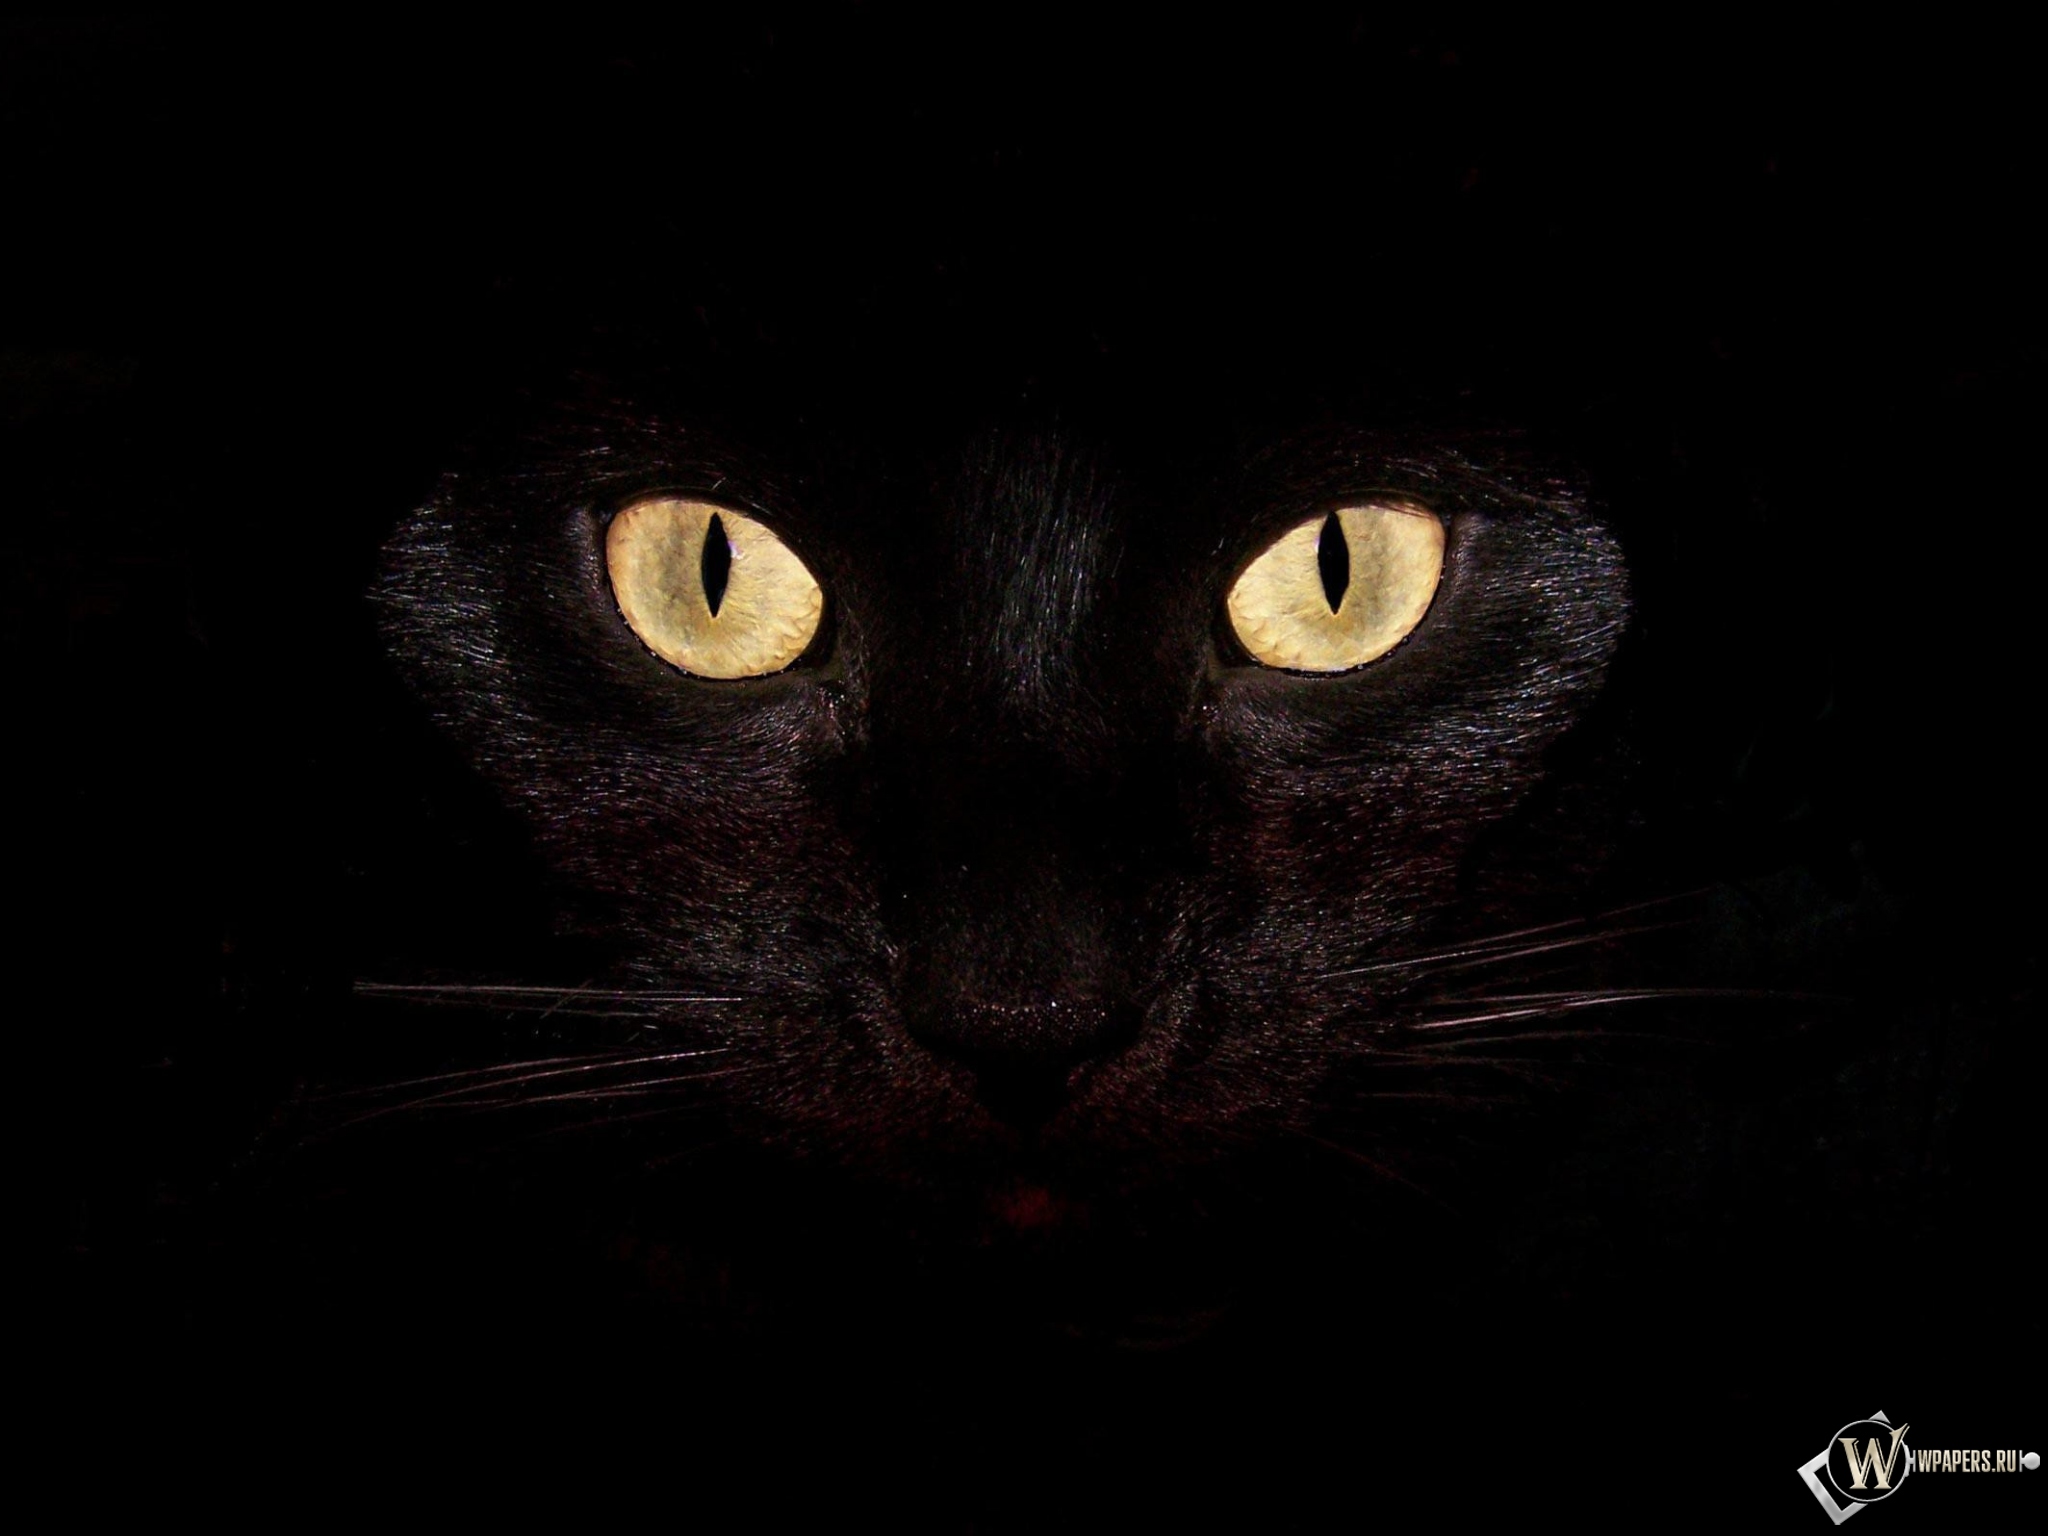 Черная кошка на чернофм фоне 2048x1536